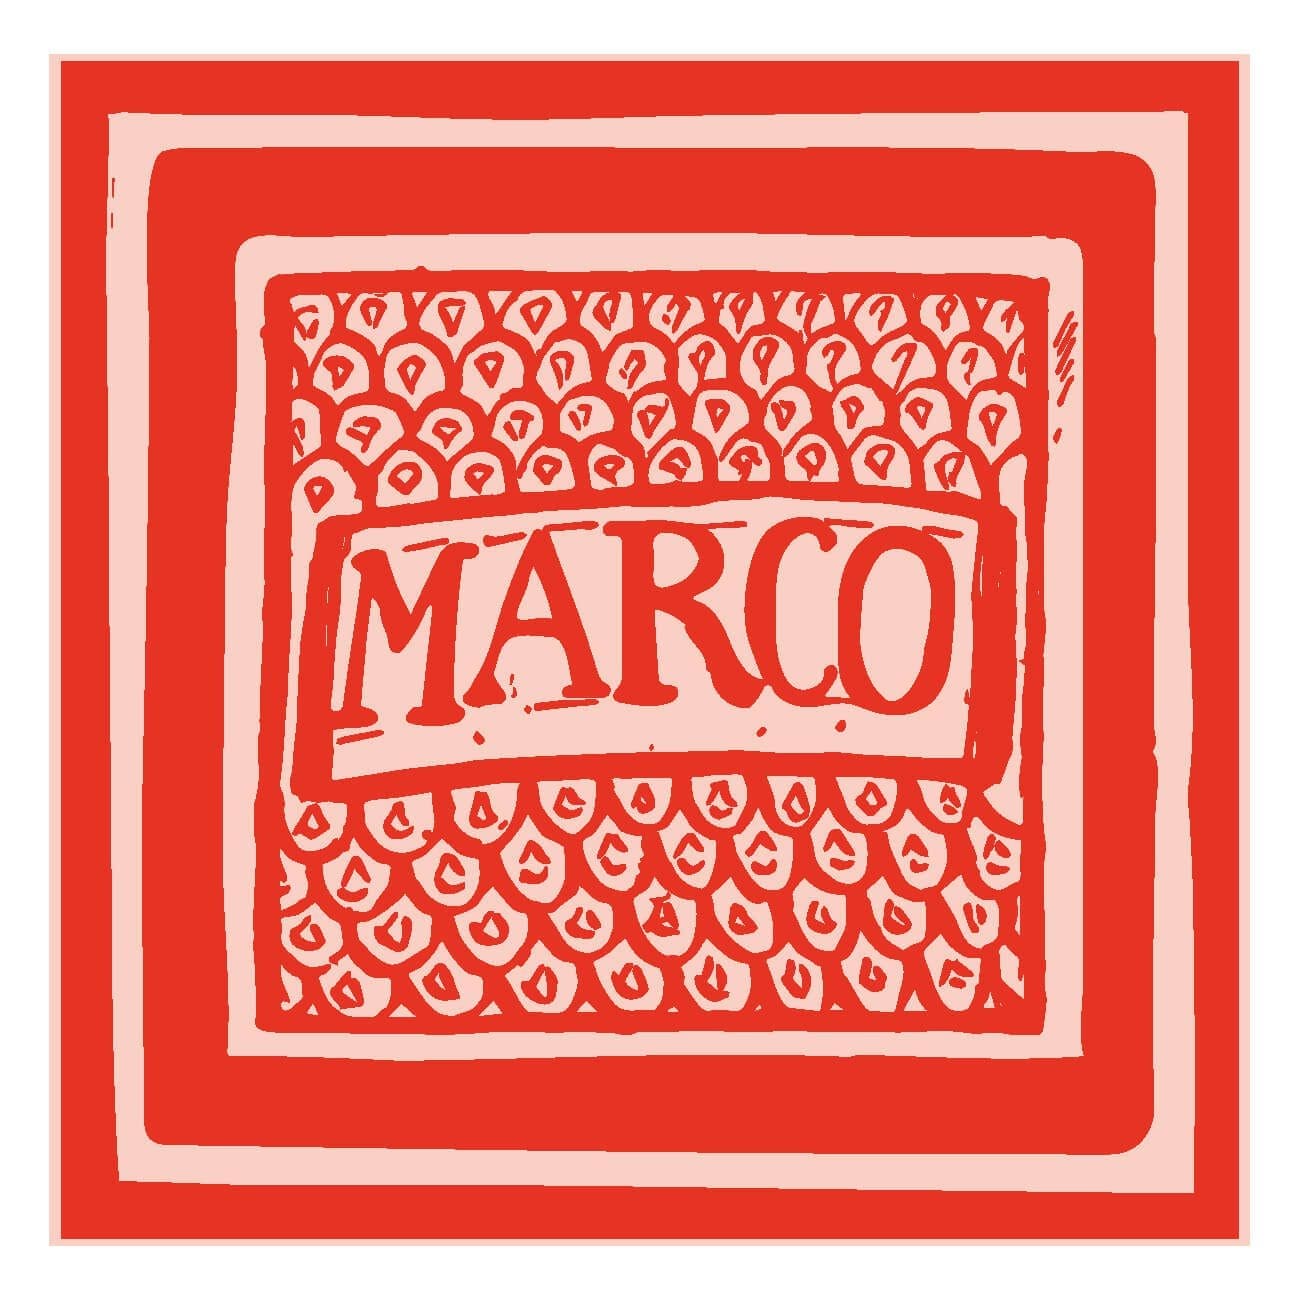 IchetKar dessine le carreau Marco pour le chef italien marcolino